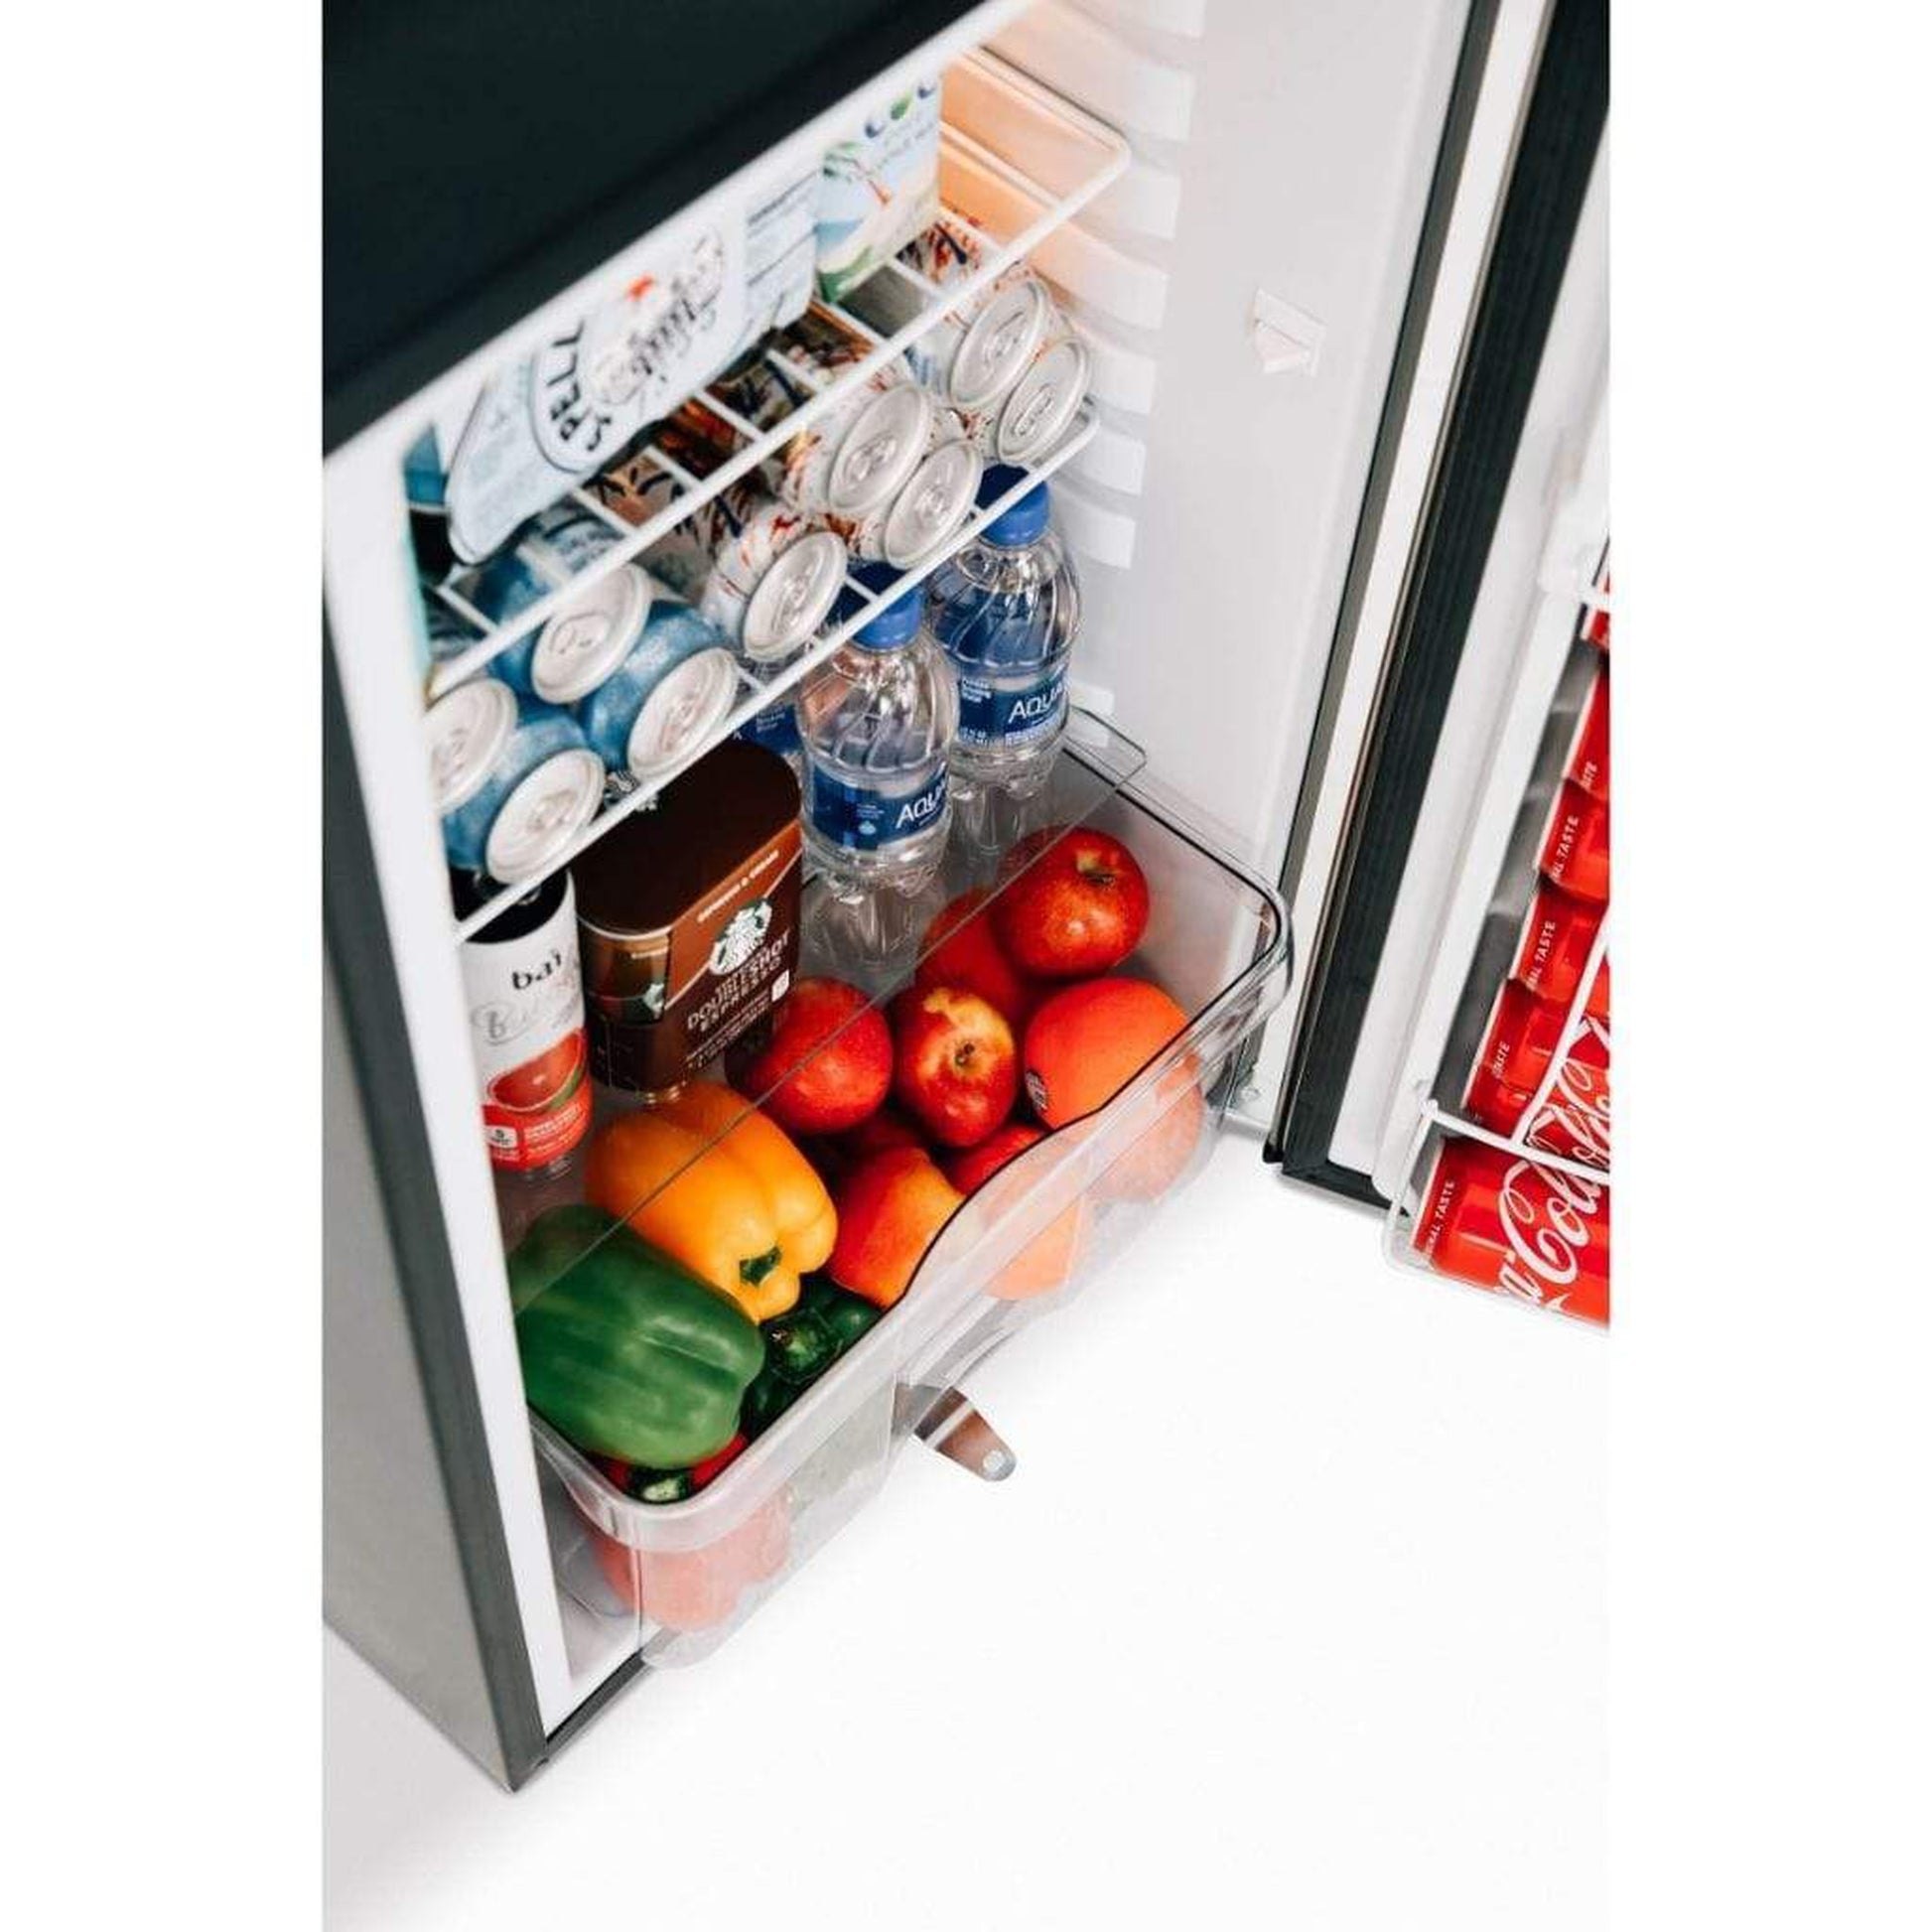 Summerset 21" 4.5 Cu. Ft. Compact Refrigerator with Reversible Door